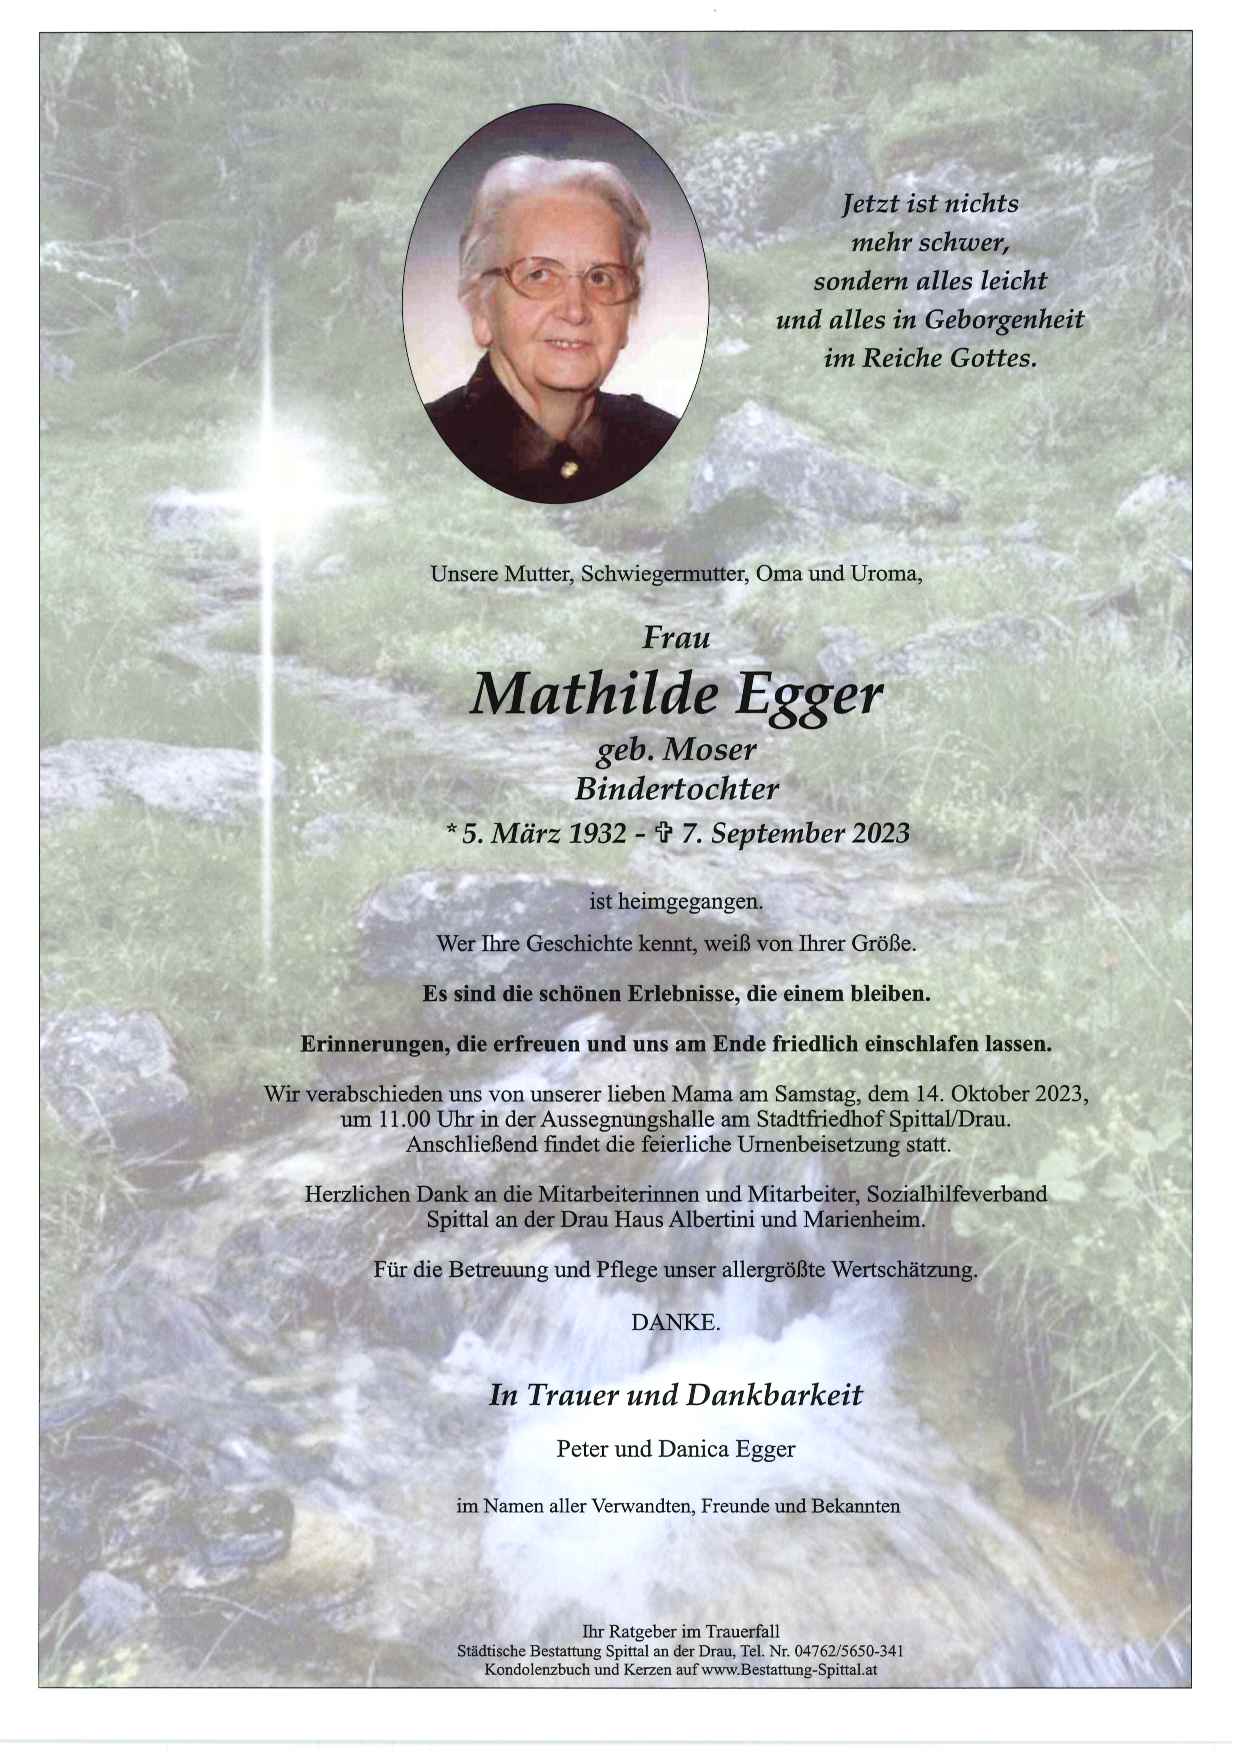 Mathilde Egger 